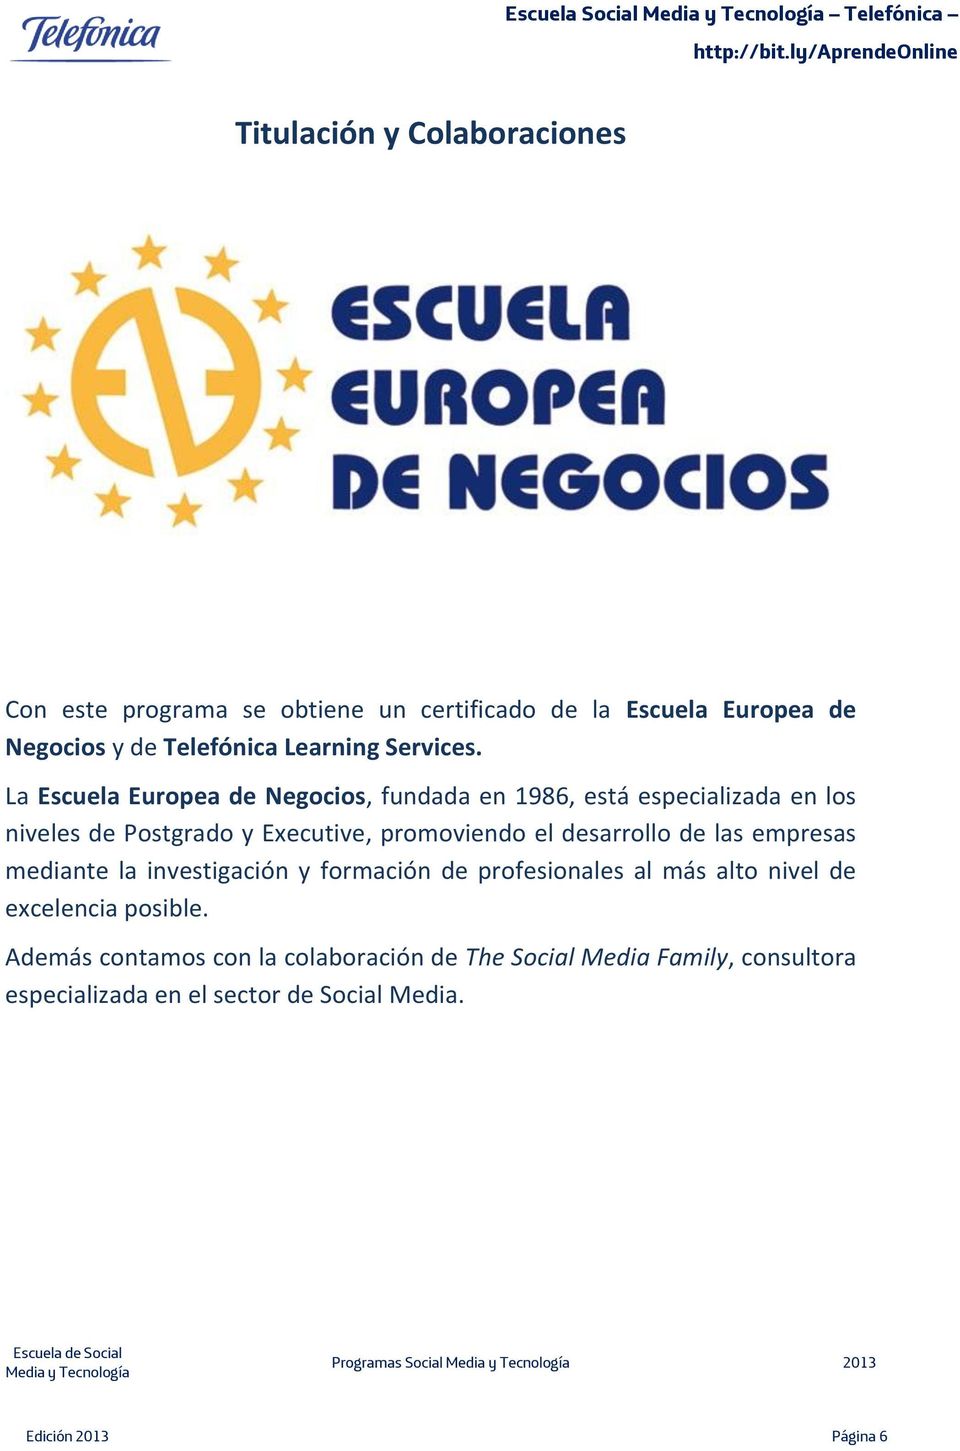 La Escuela Europea de Negocios, fundada en 1986, está especializada en los niveles de Postgrado y Executive, promoviendo el desarrollo de las